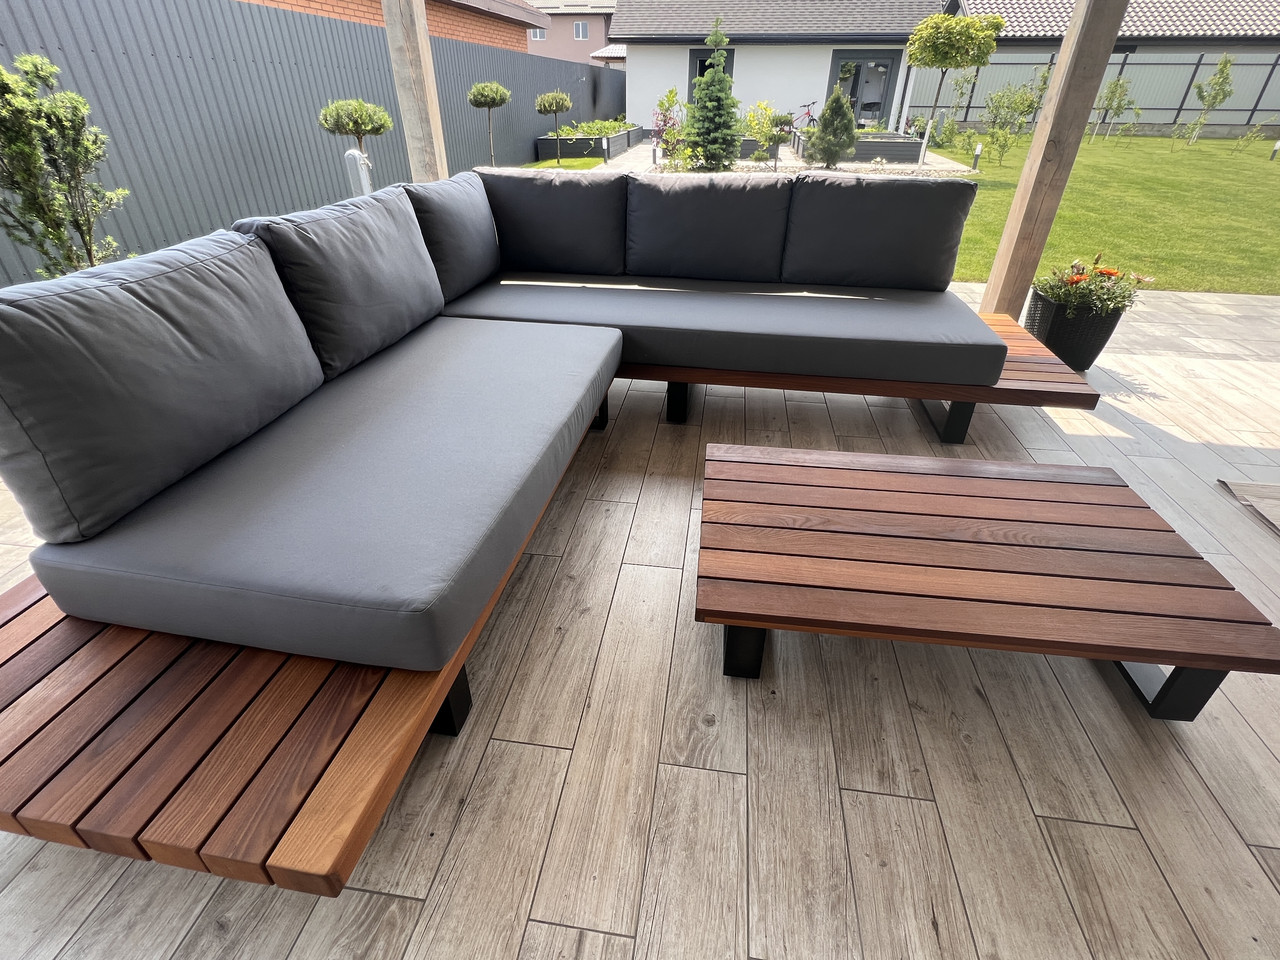 Комплект меблів для тераси, кутовий лаунж диван та столик. Модель Timber.